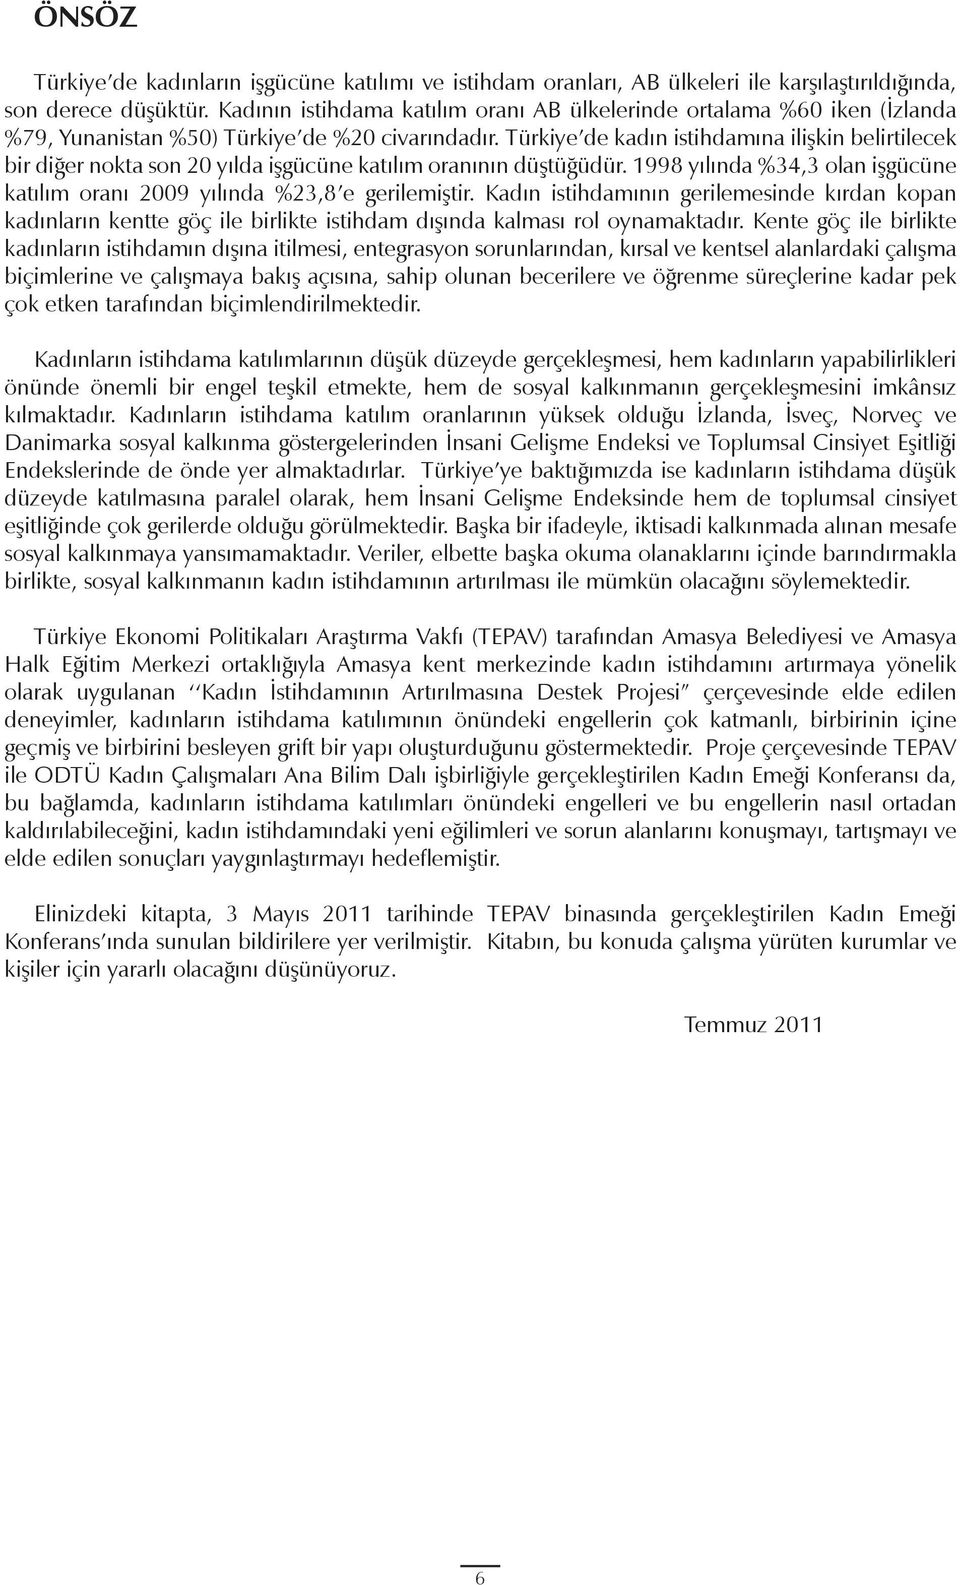 Türkiye de kadın istihdamına ilişkin belirtilecek bir diğer nokta son 20 yılda işgücüne katılım oranının düştüğüdür. 1998 yılında %34,3 olan işgücüne katılım oranı 2009 yılında %23,8 e gerilemiştir.